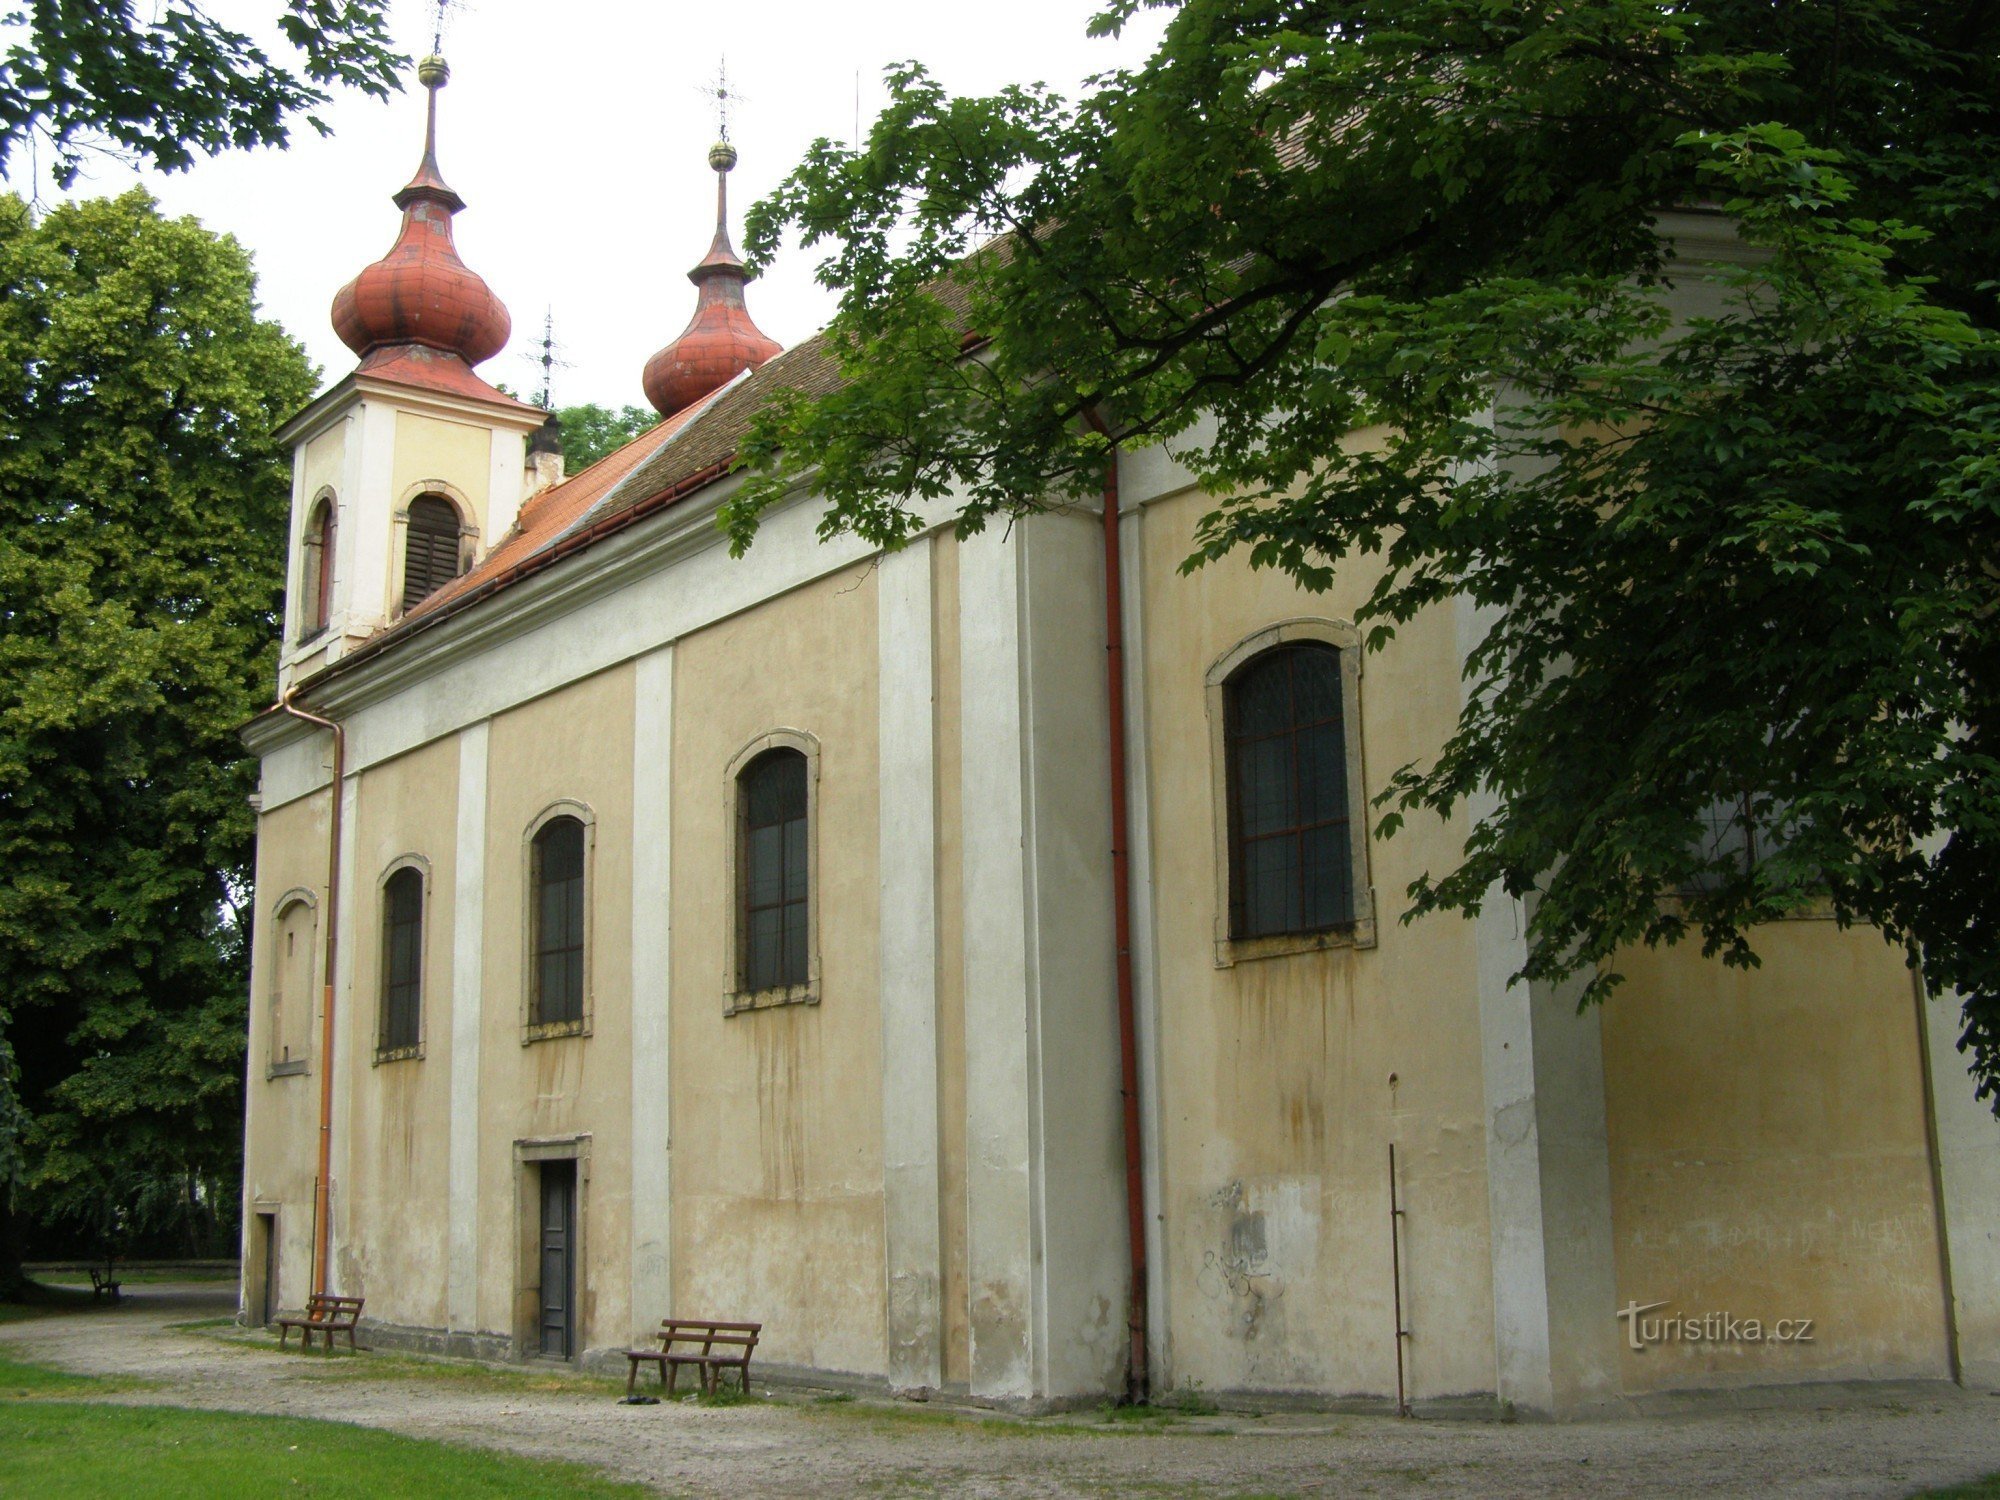 Nový Bydžov - Iglesia de la Santísima Trinidad